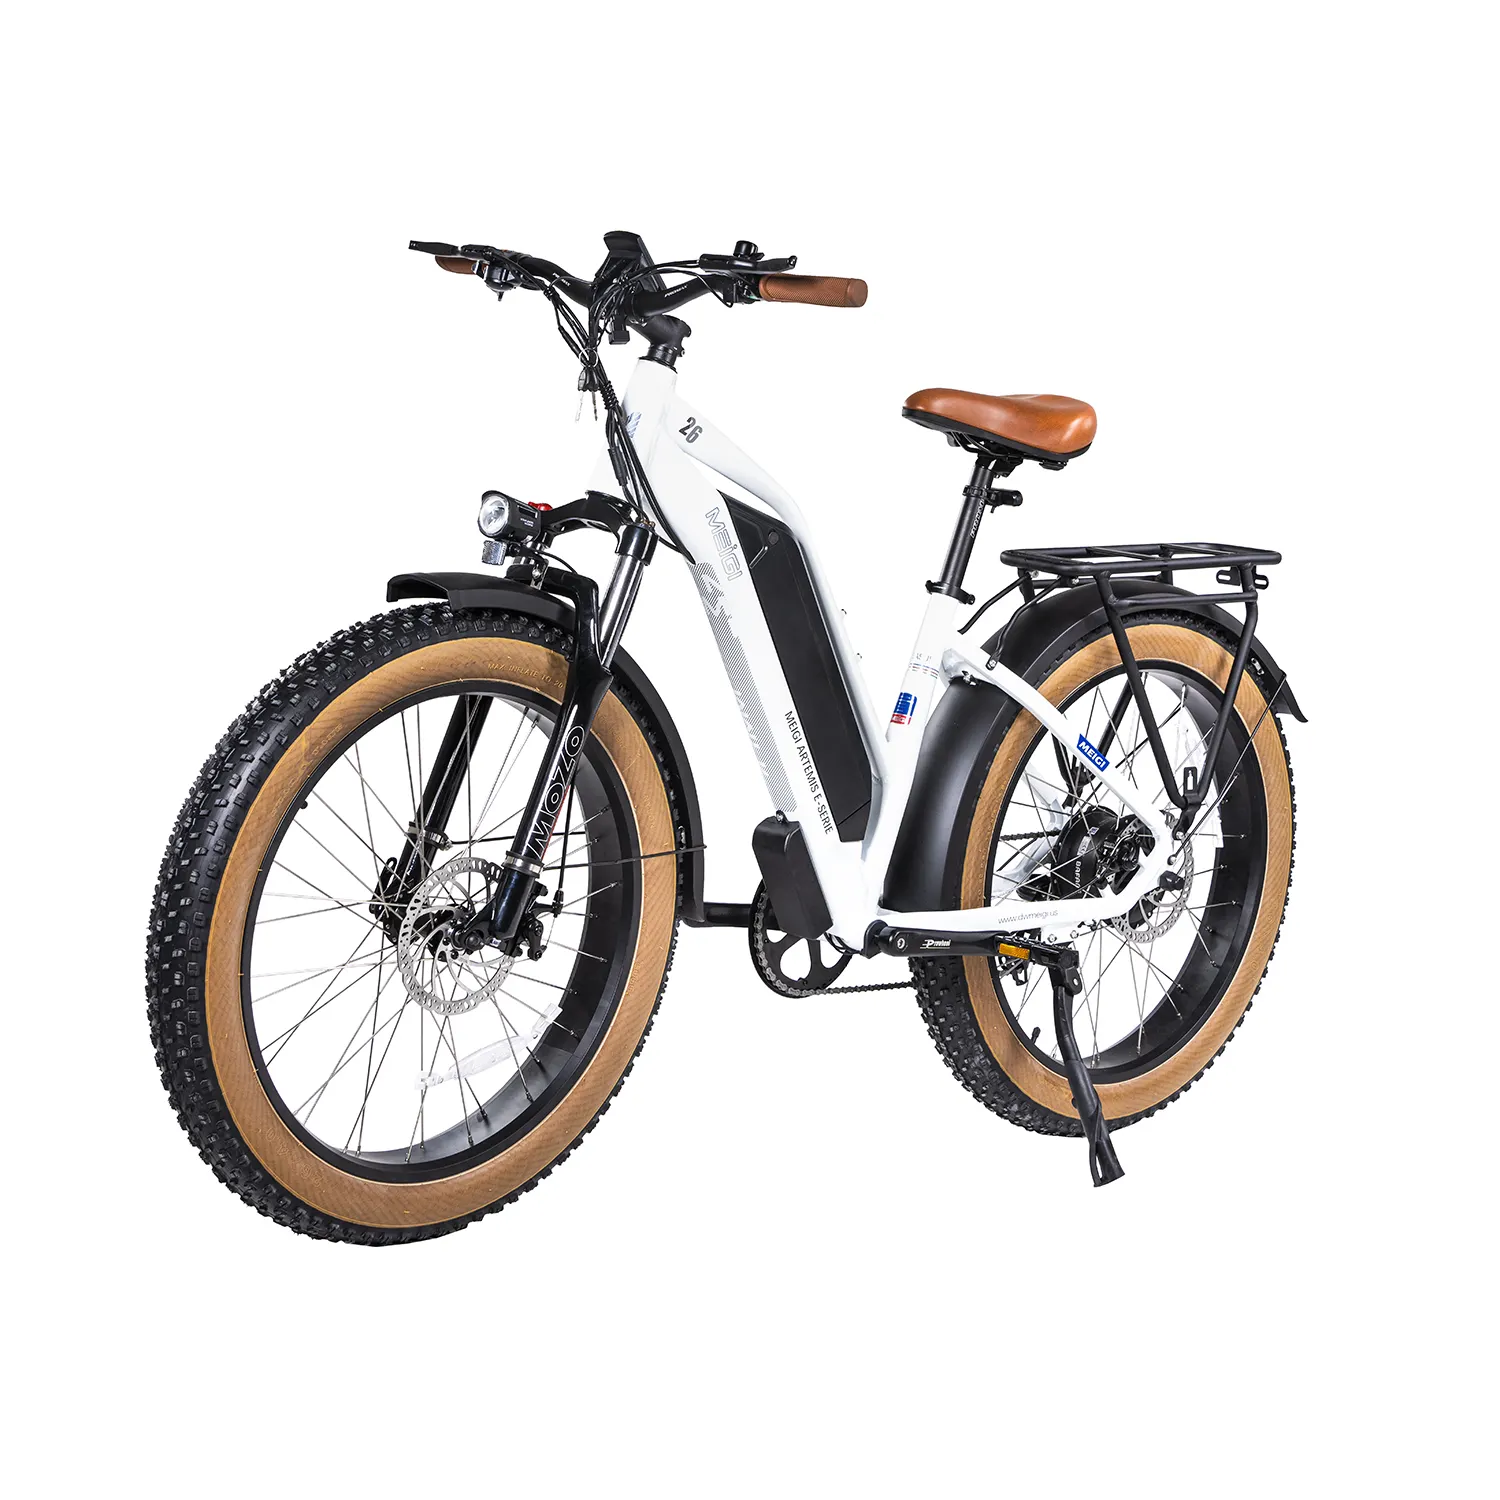 MEIGI-Bicicleta eléctrica con Motor 48V 750w, bici de 26 pulgadas, neumático ancho, 16Ah, listo para enviar, disponible en EE. UU., envío gratis